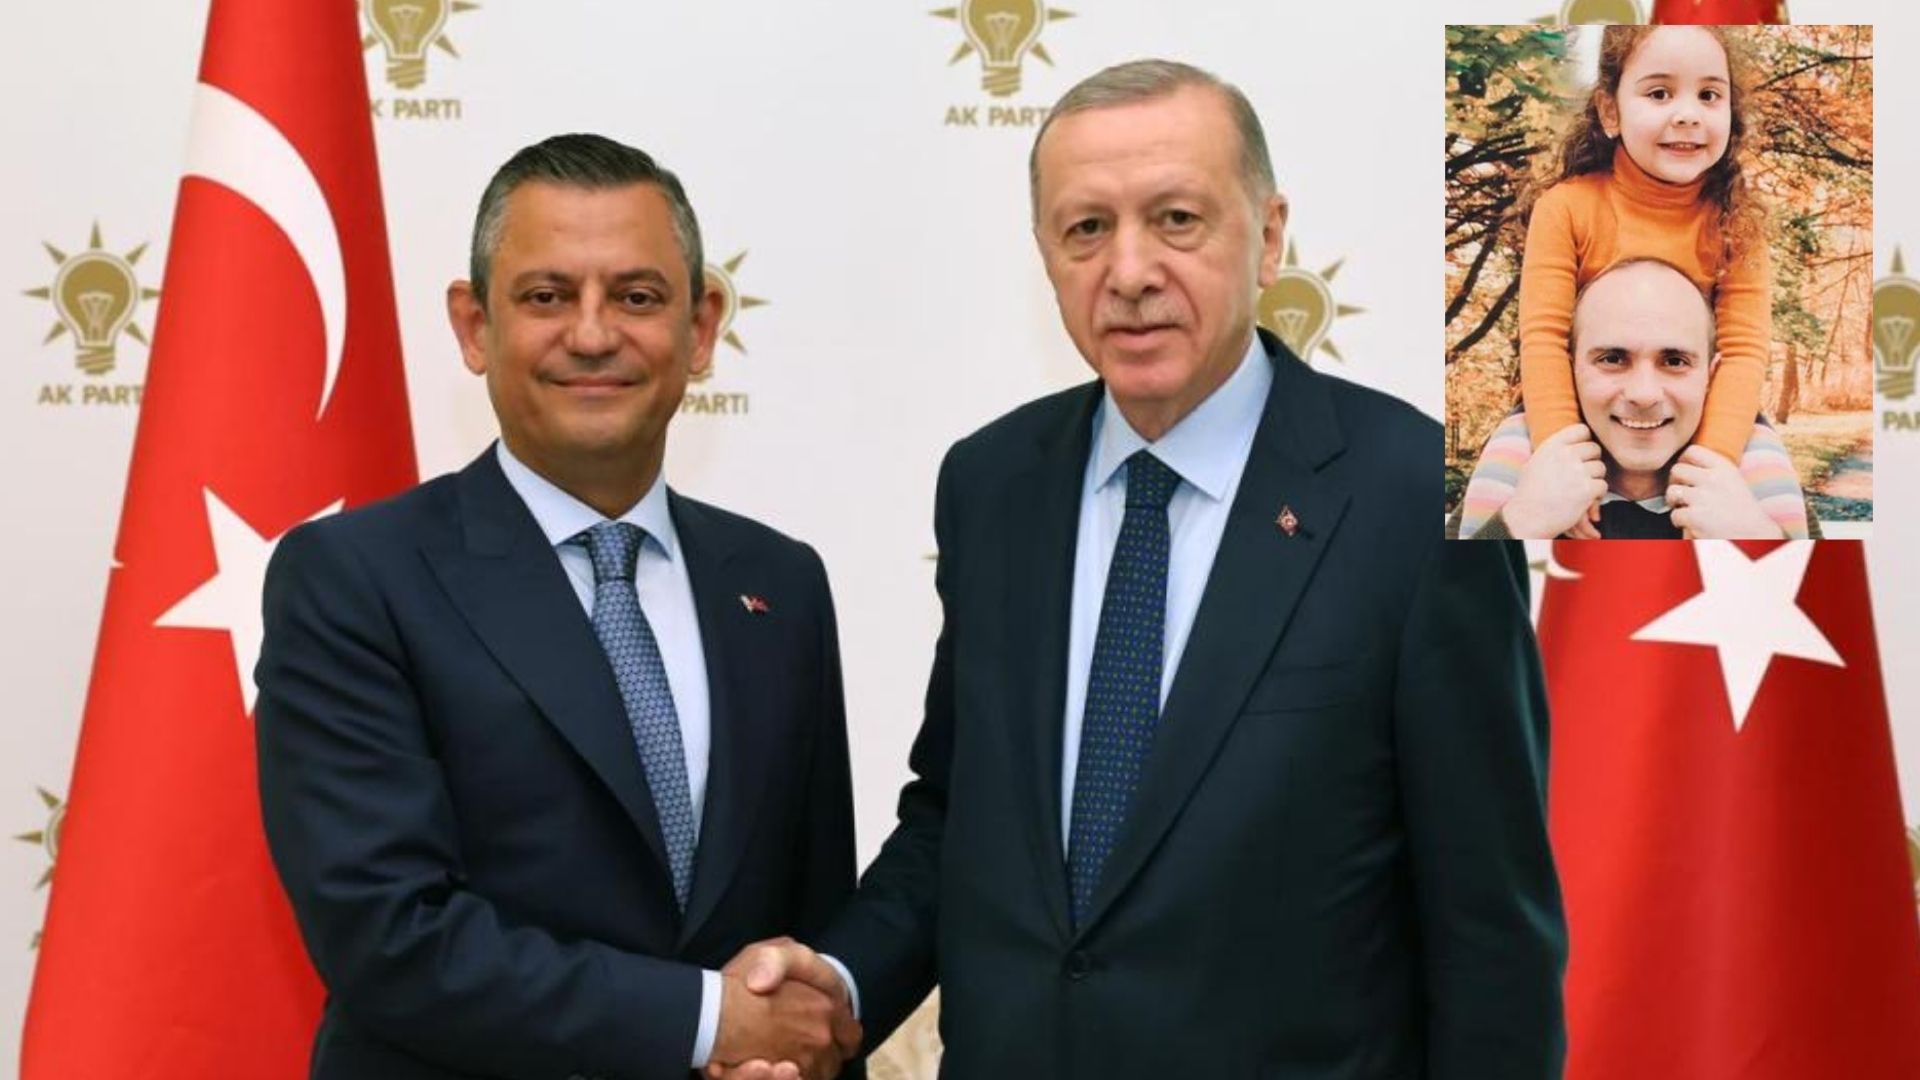 Özel ve Erdoğan görüşmesinde yeni detay: Tayfun Kahraman’ın kızı Vera’nın fotoğrafı Erdoğan’a verildi